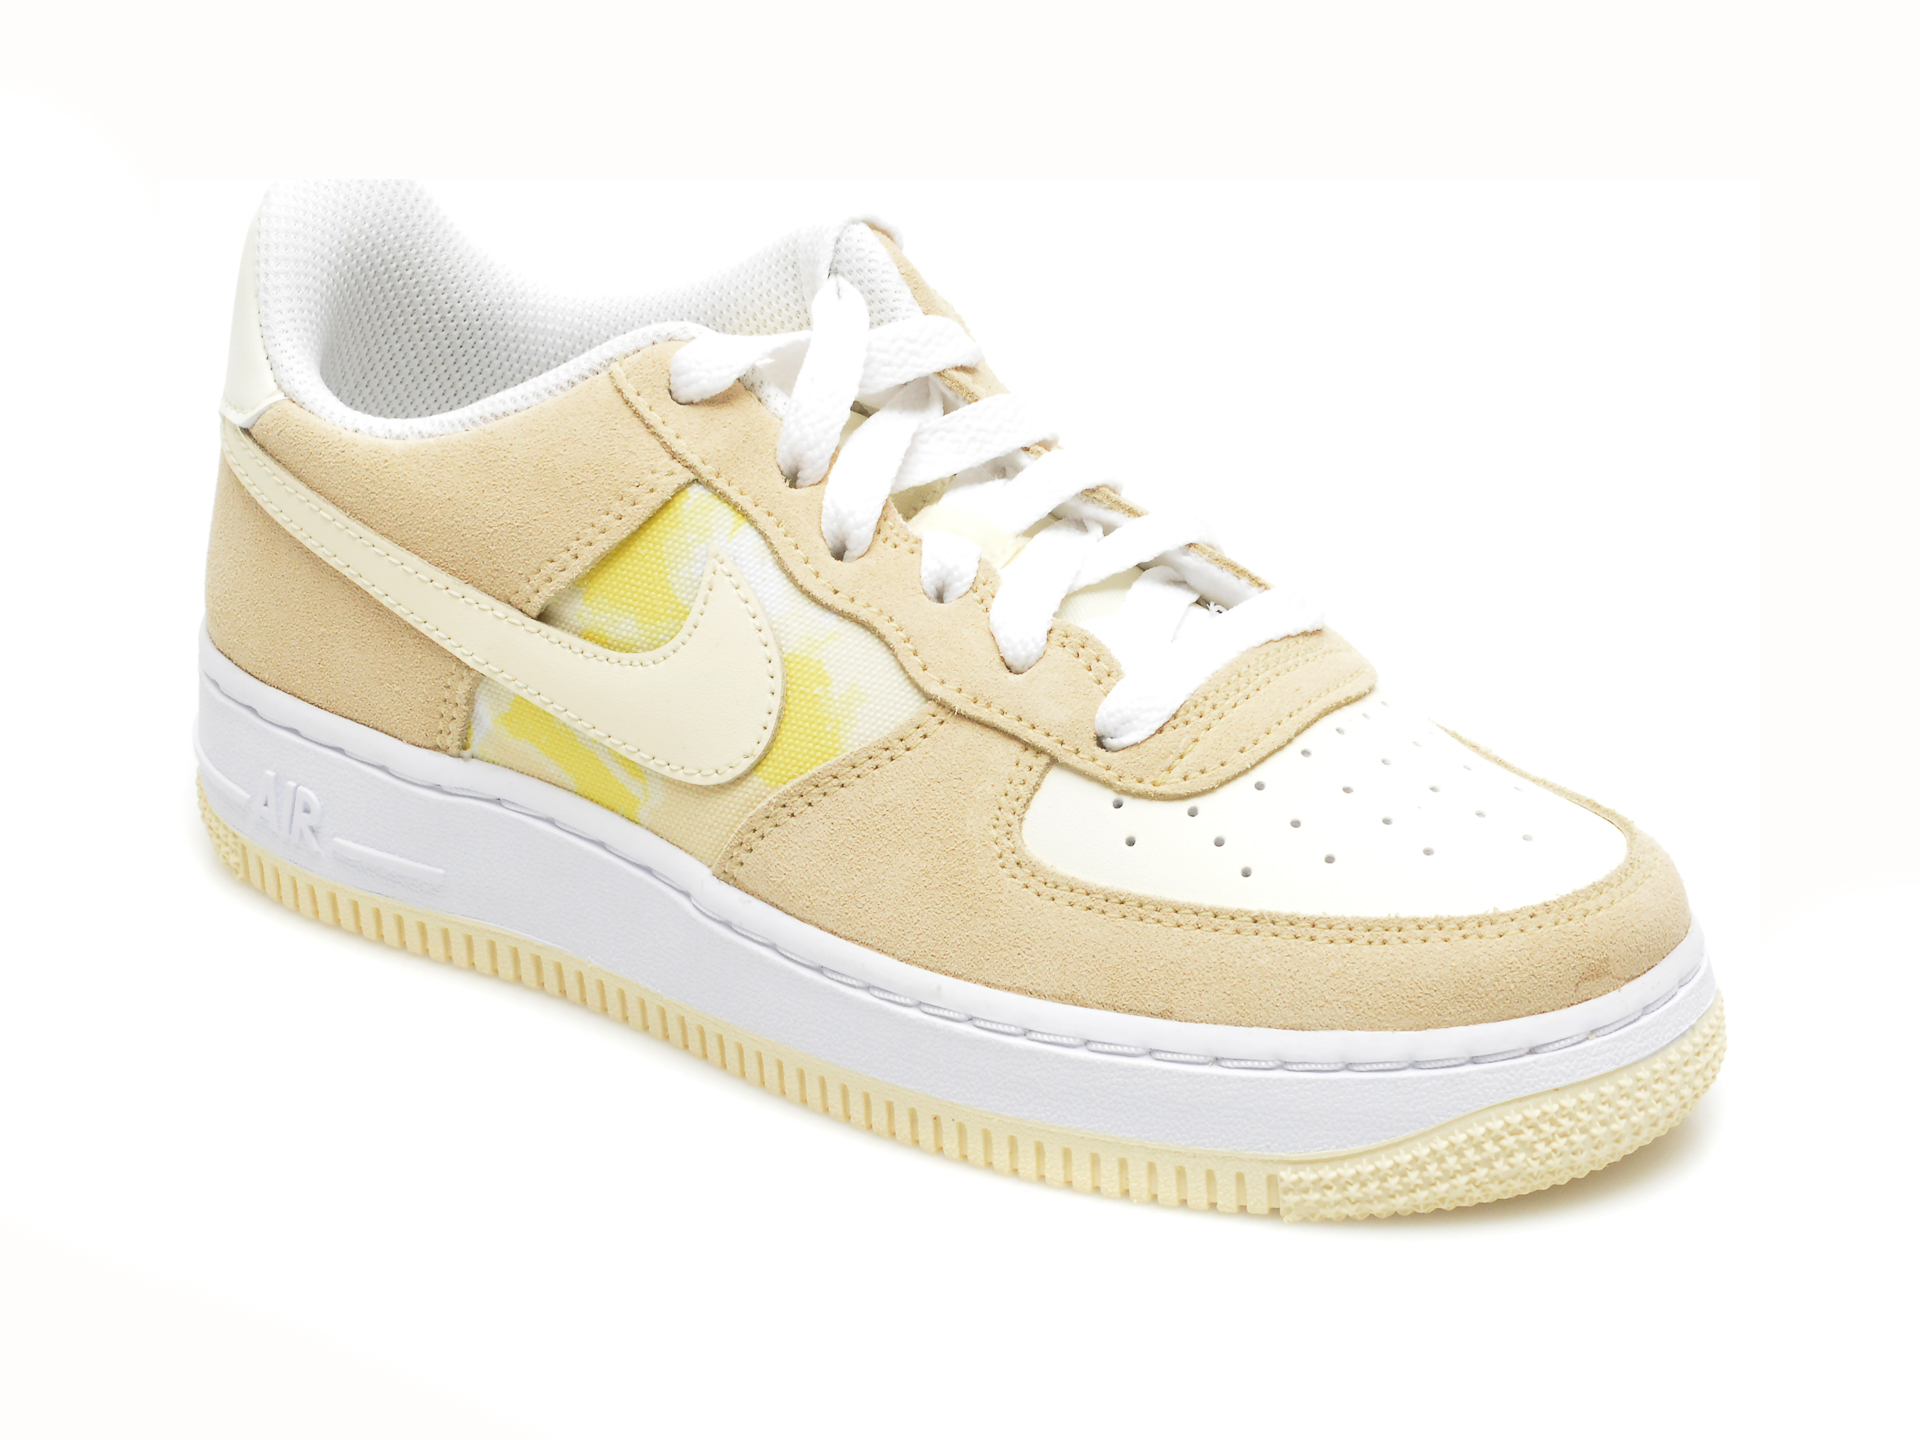 Pantofi sport NIKE bej, NIKE AIR FORCE 1 LOW GS TM, din material textil si piele naturala Nike imagine reduceri